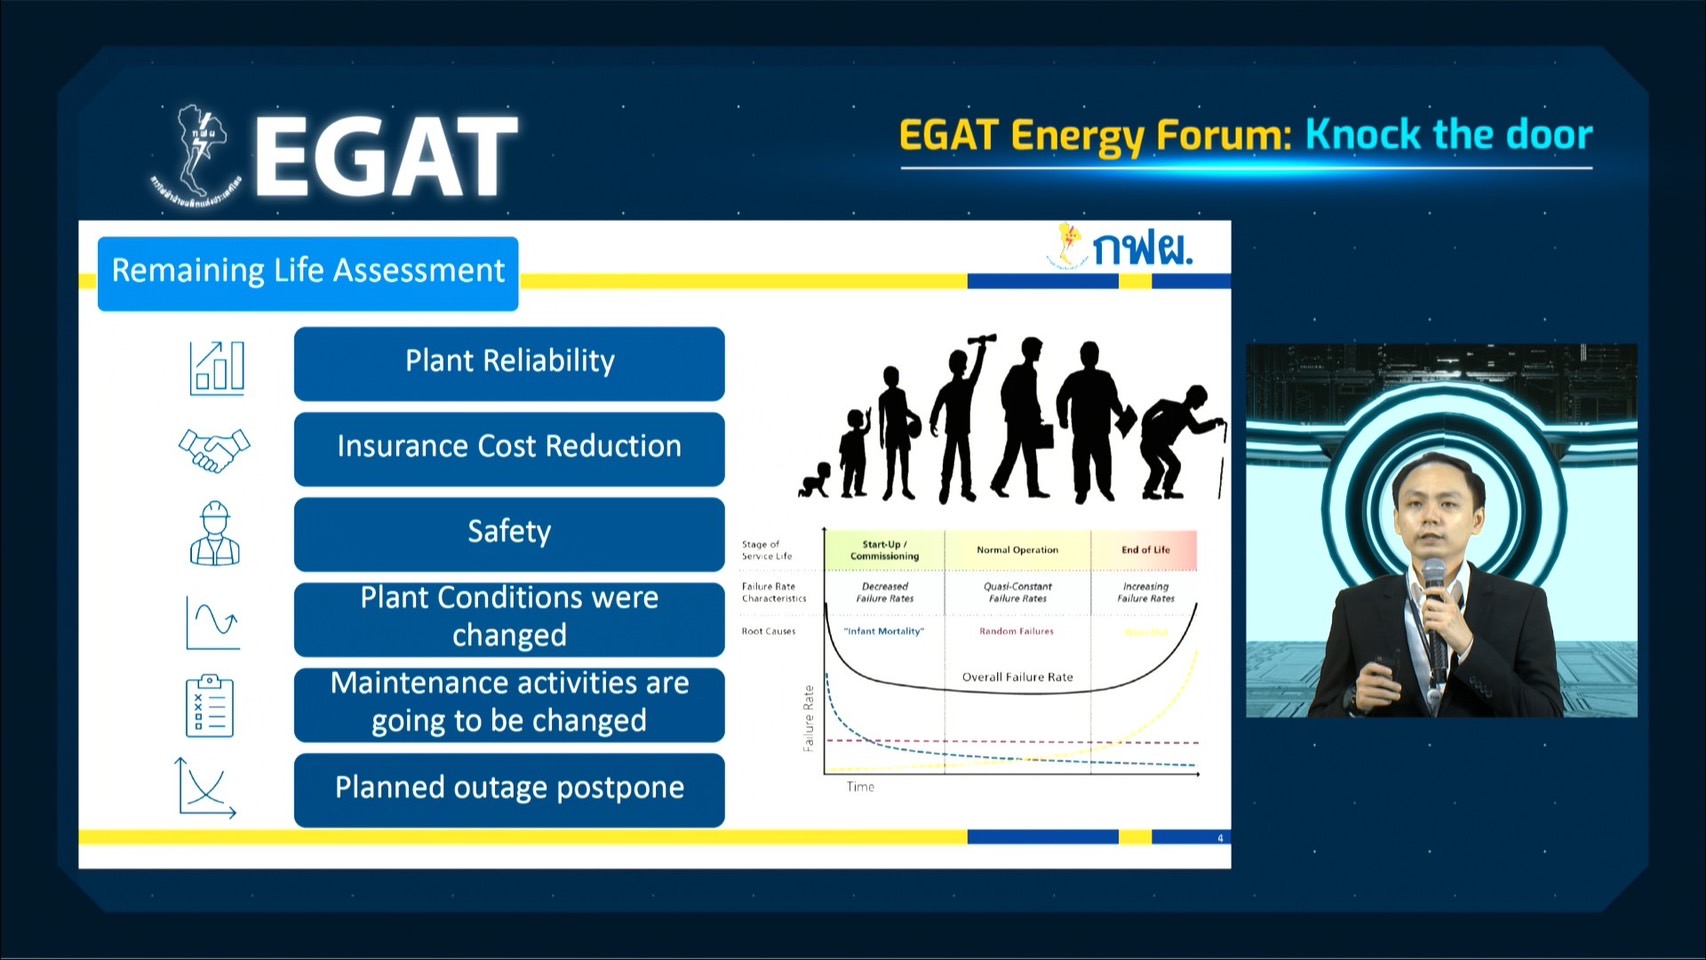 สายงาน รวธ. จัดงานสัมมนา EGAT Energy Forum : Knock The Door สำหรับกลุ่มบริษัท RATCH Group